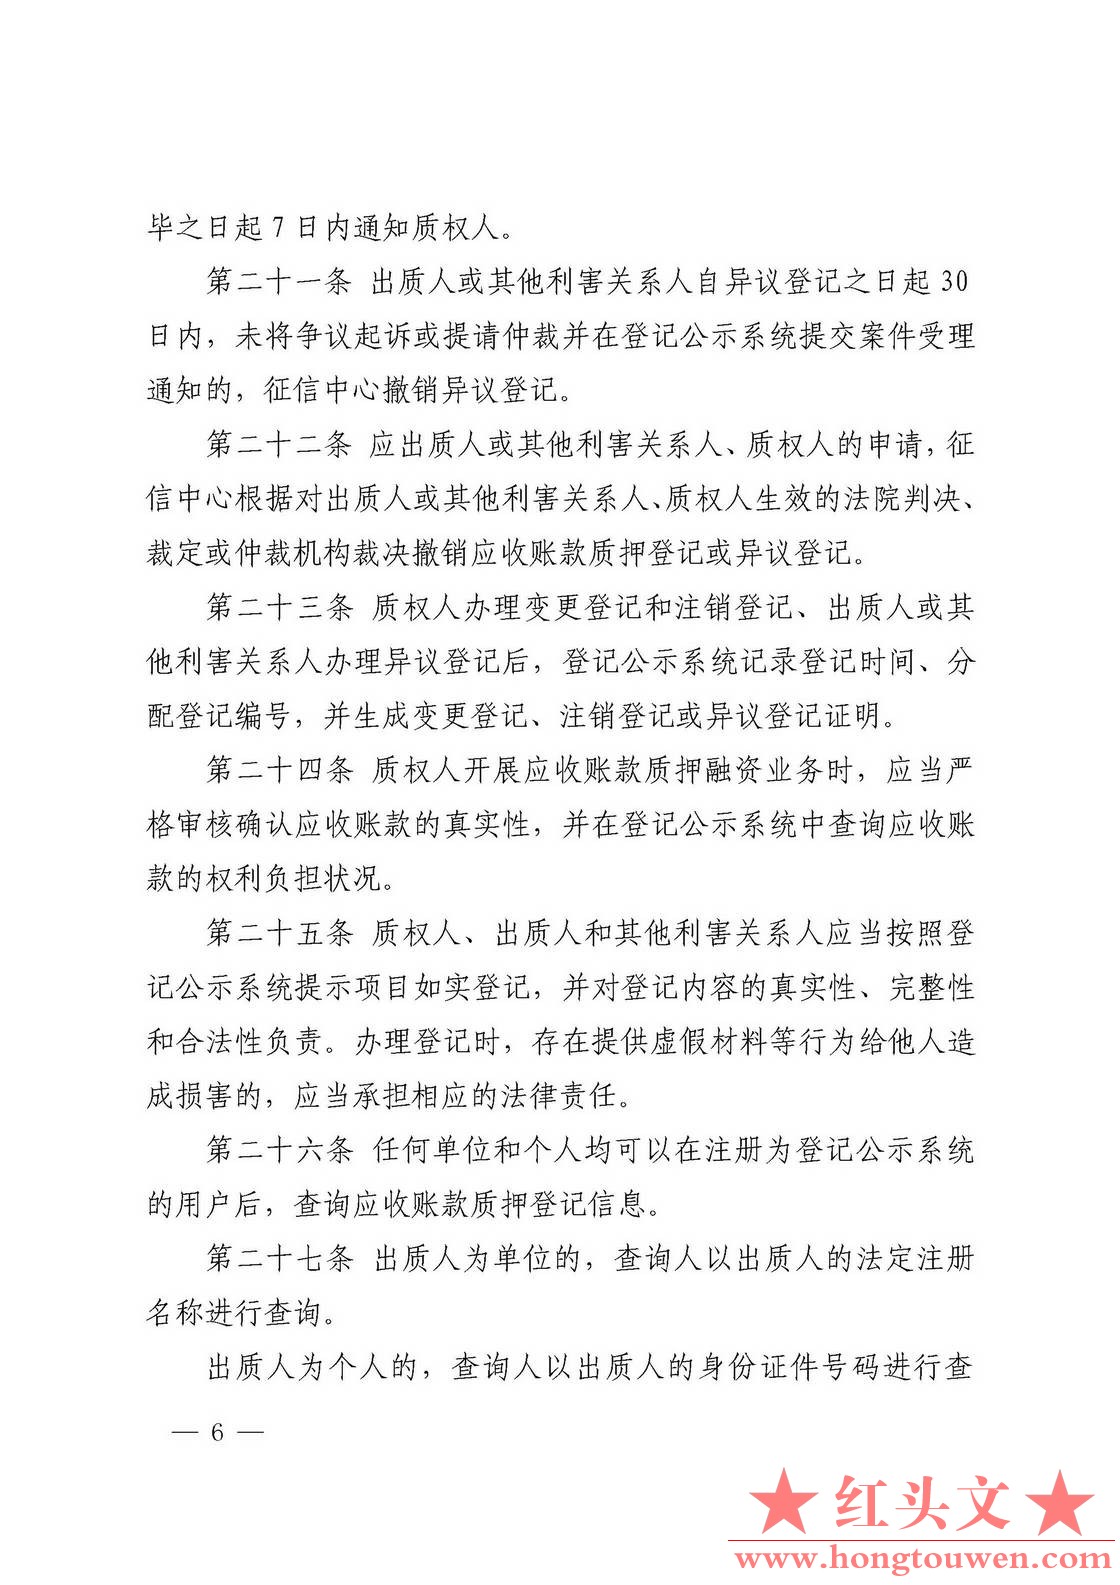 中国人民银行令[2019]第4号-应收账款质押登记办法_页面_6.jpg